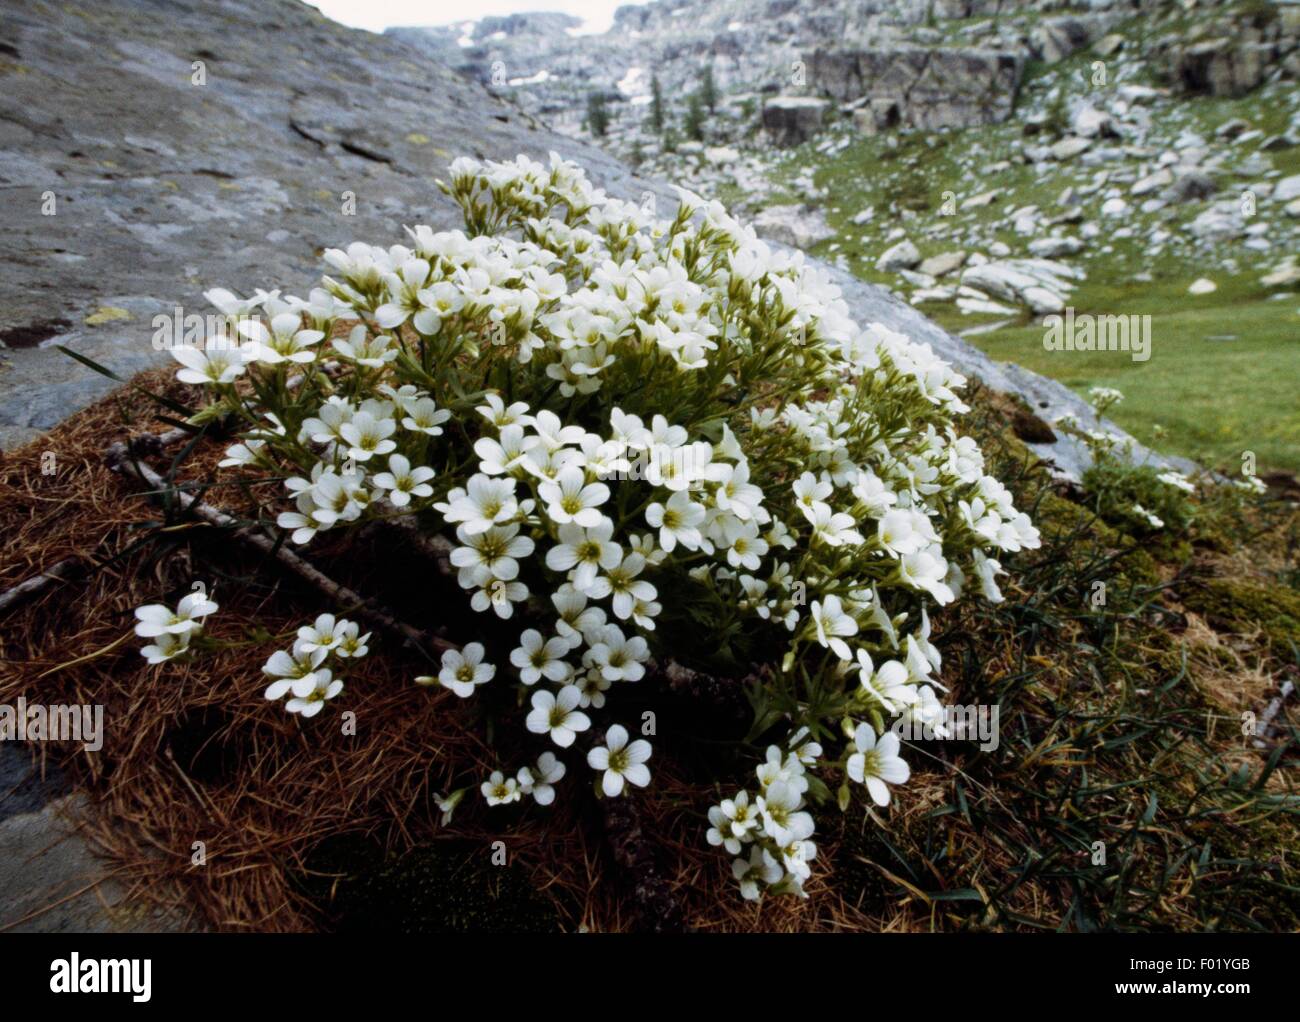 Piedmont saxifrage (Saxifraga pedemontana), Vallee des Merveilles, Mercantour National Park (Parc national du Mercantour), Alpes-Maritimes, Provence-Alpes-Cote d'Azur, France. Stock Photo